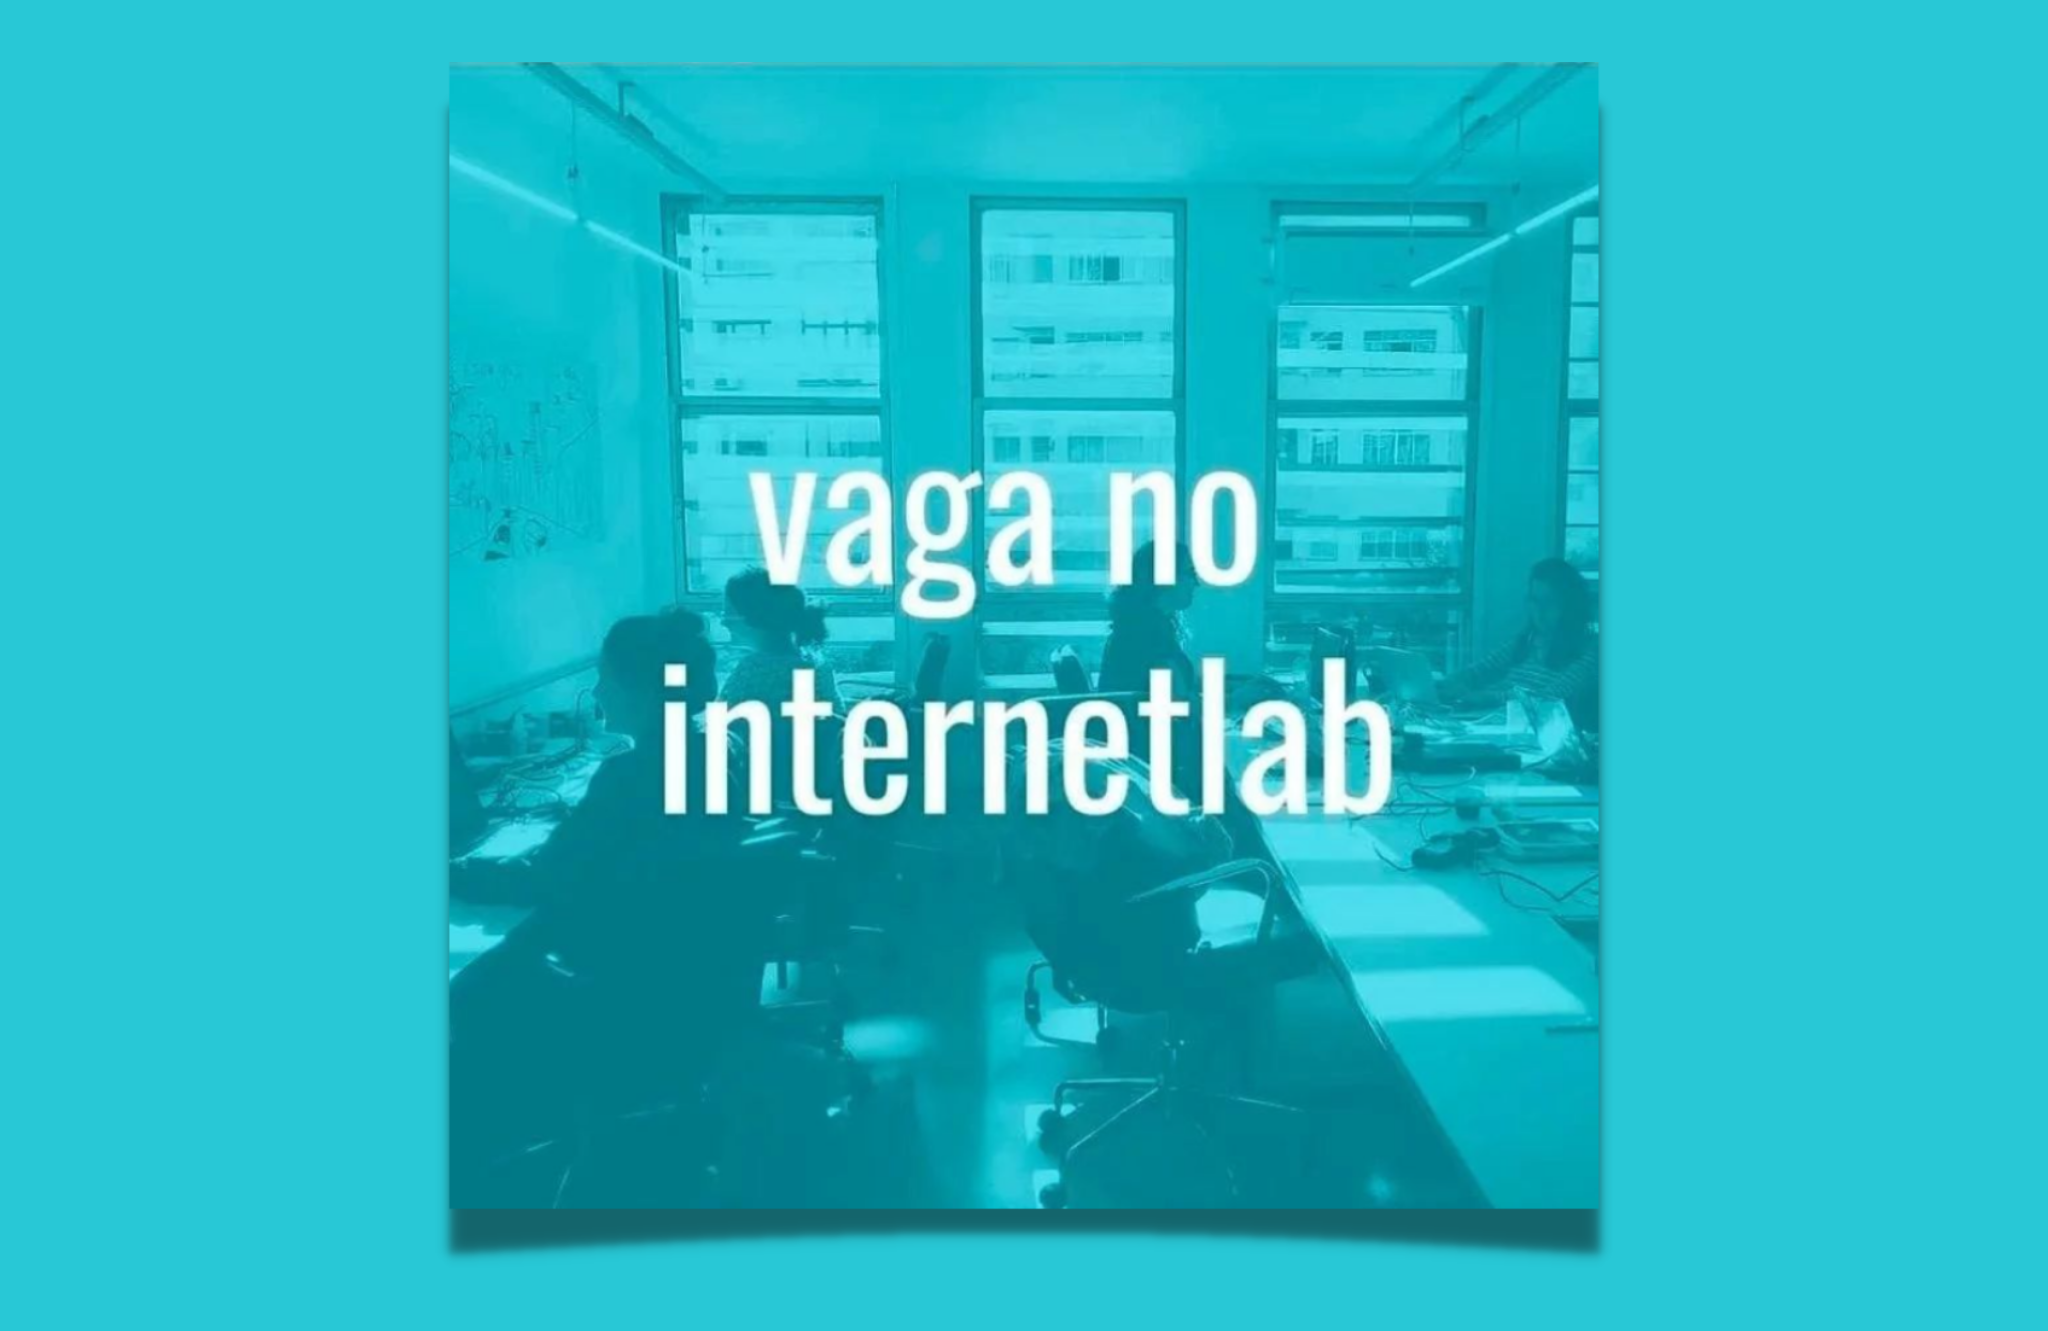 Imagem ilustrativa do escritório do InternetLab em azul com o texto centralizado 'vaga no internetlab'.